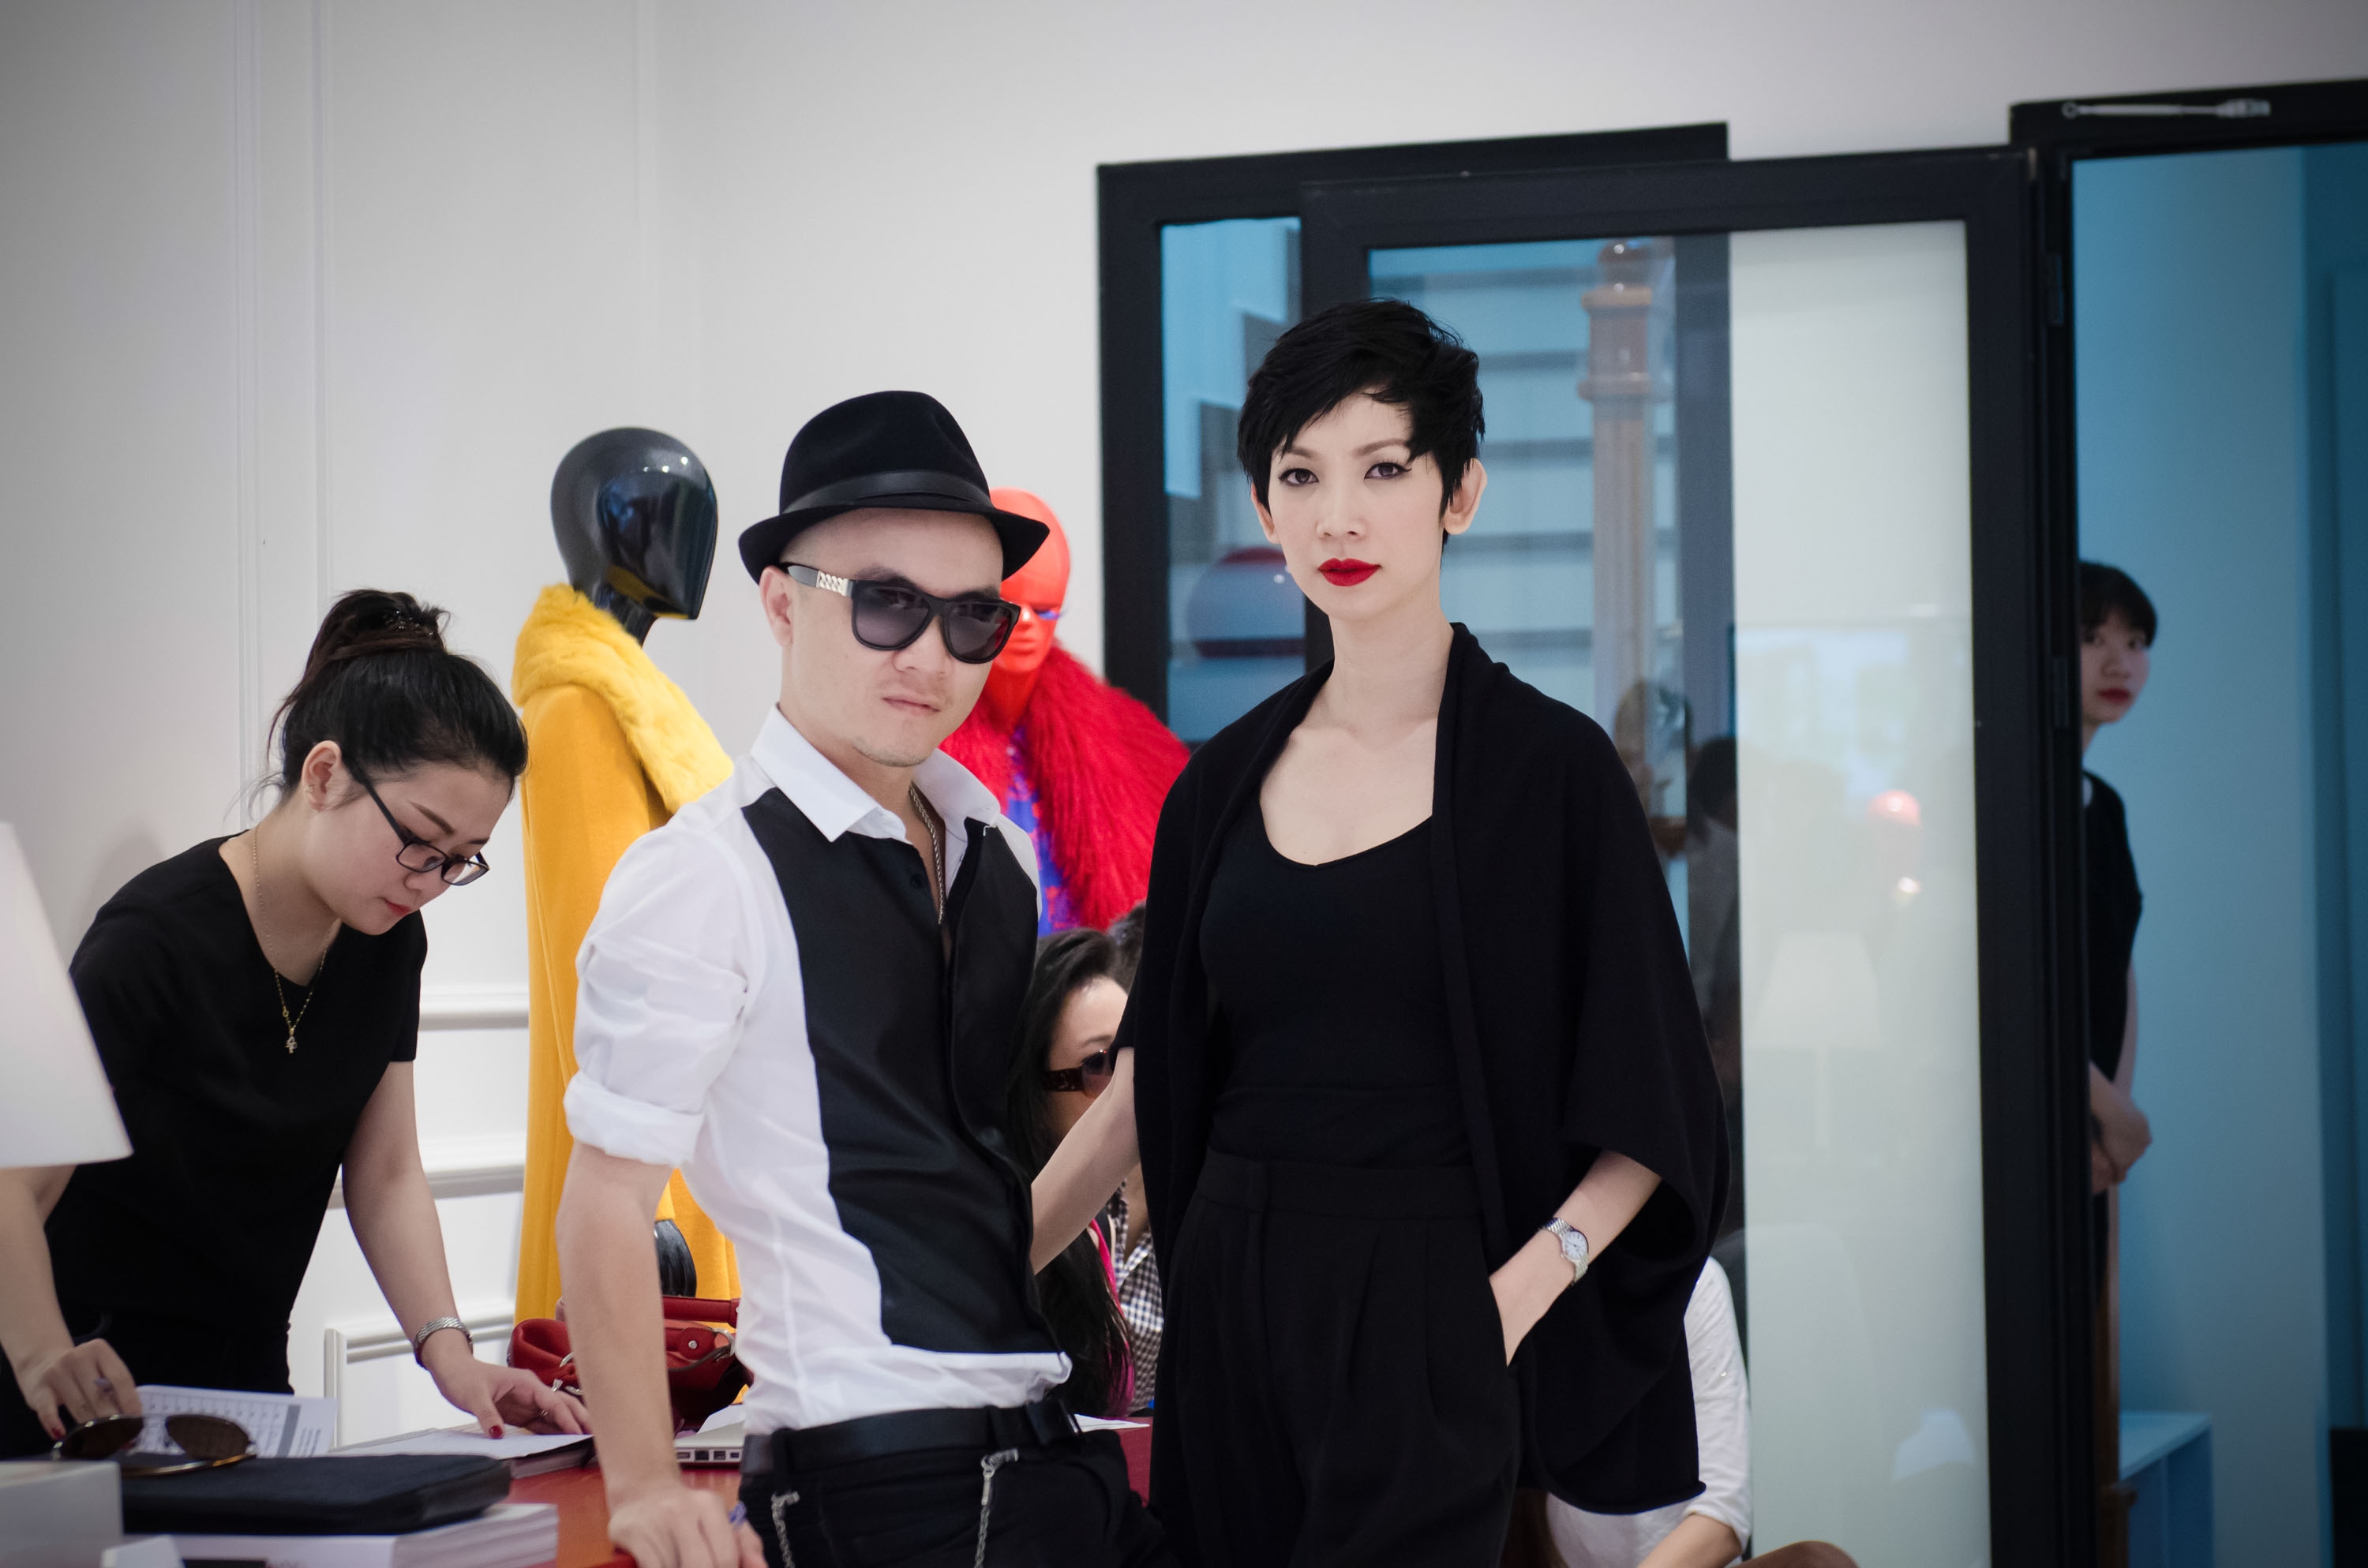 NTK Đỗ Mạnh Cường casting người mẫu cho show Xuân Hè 2014 